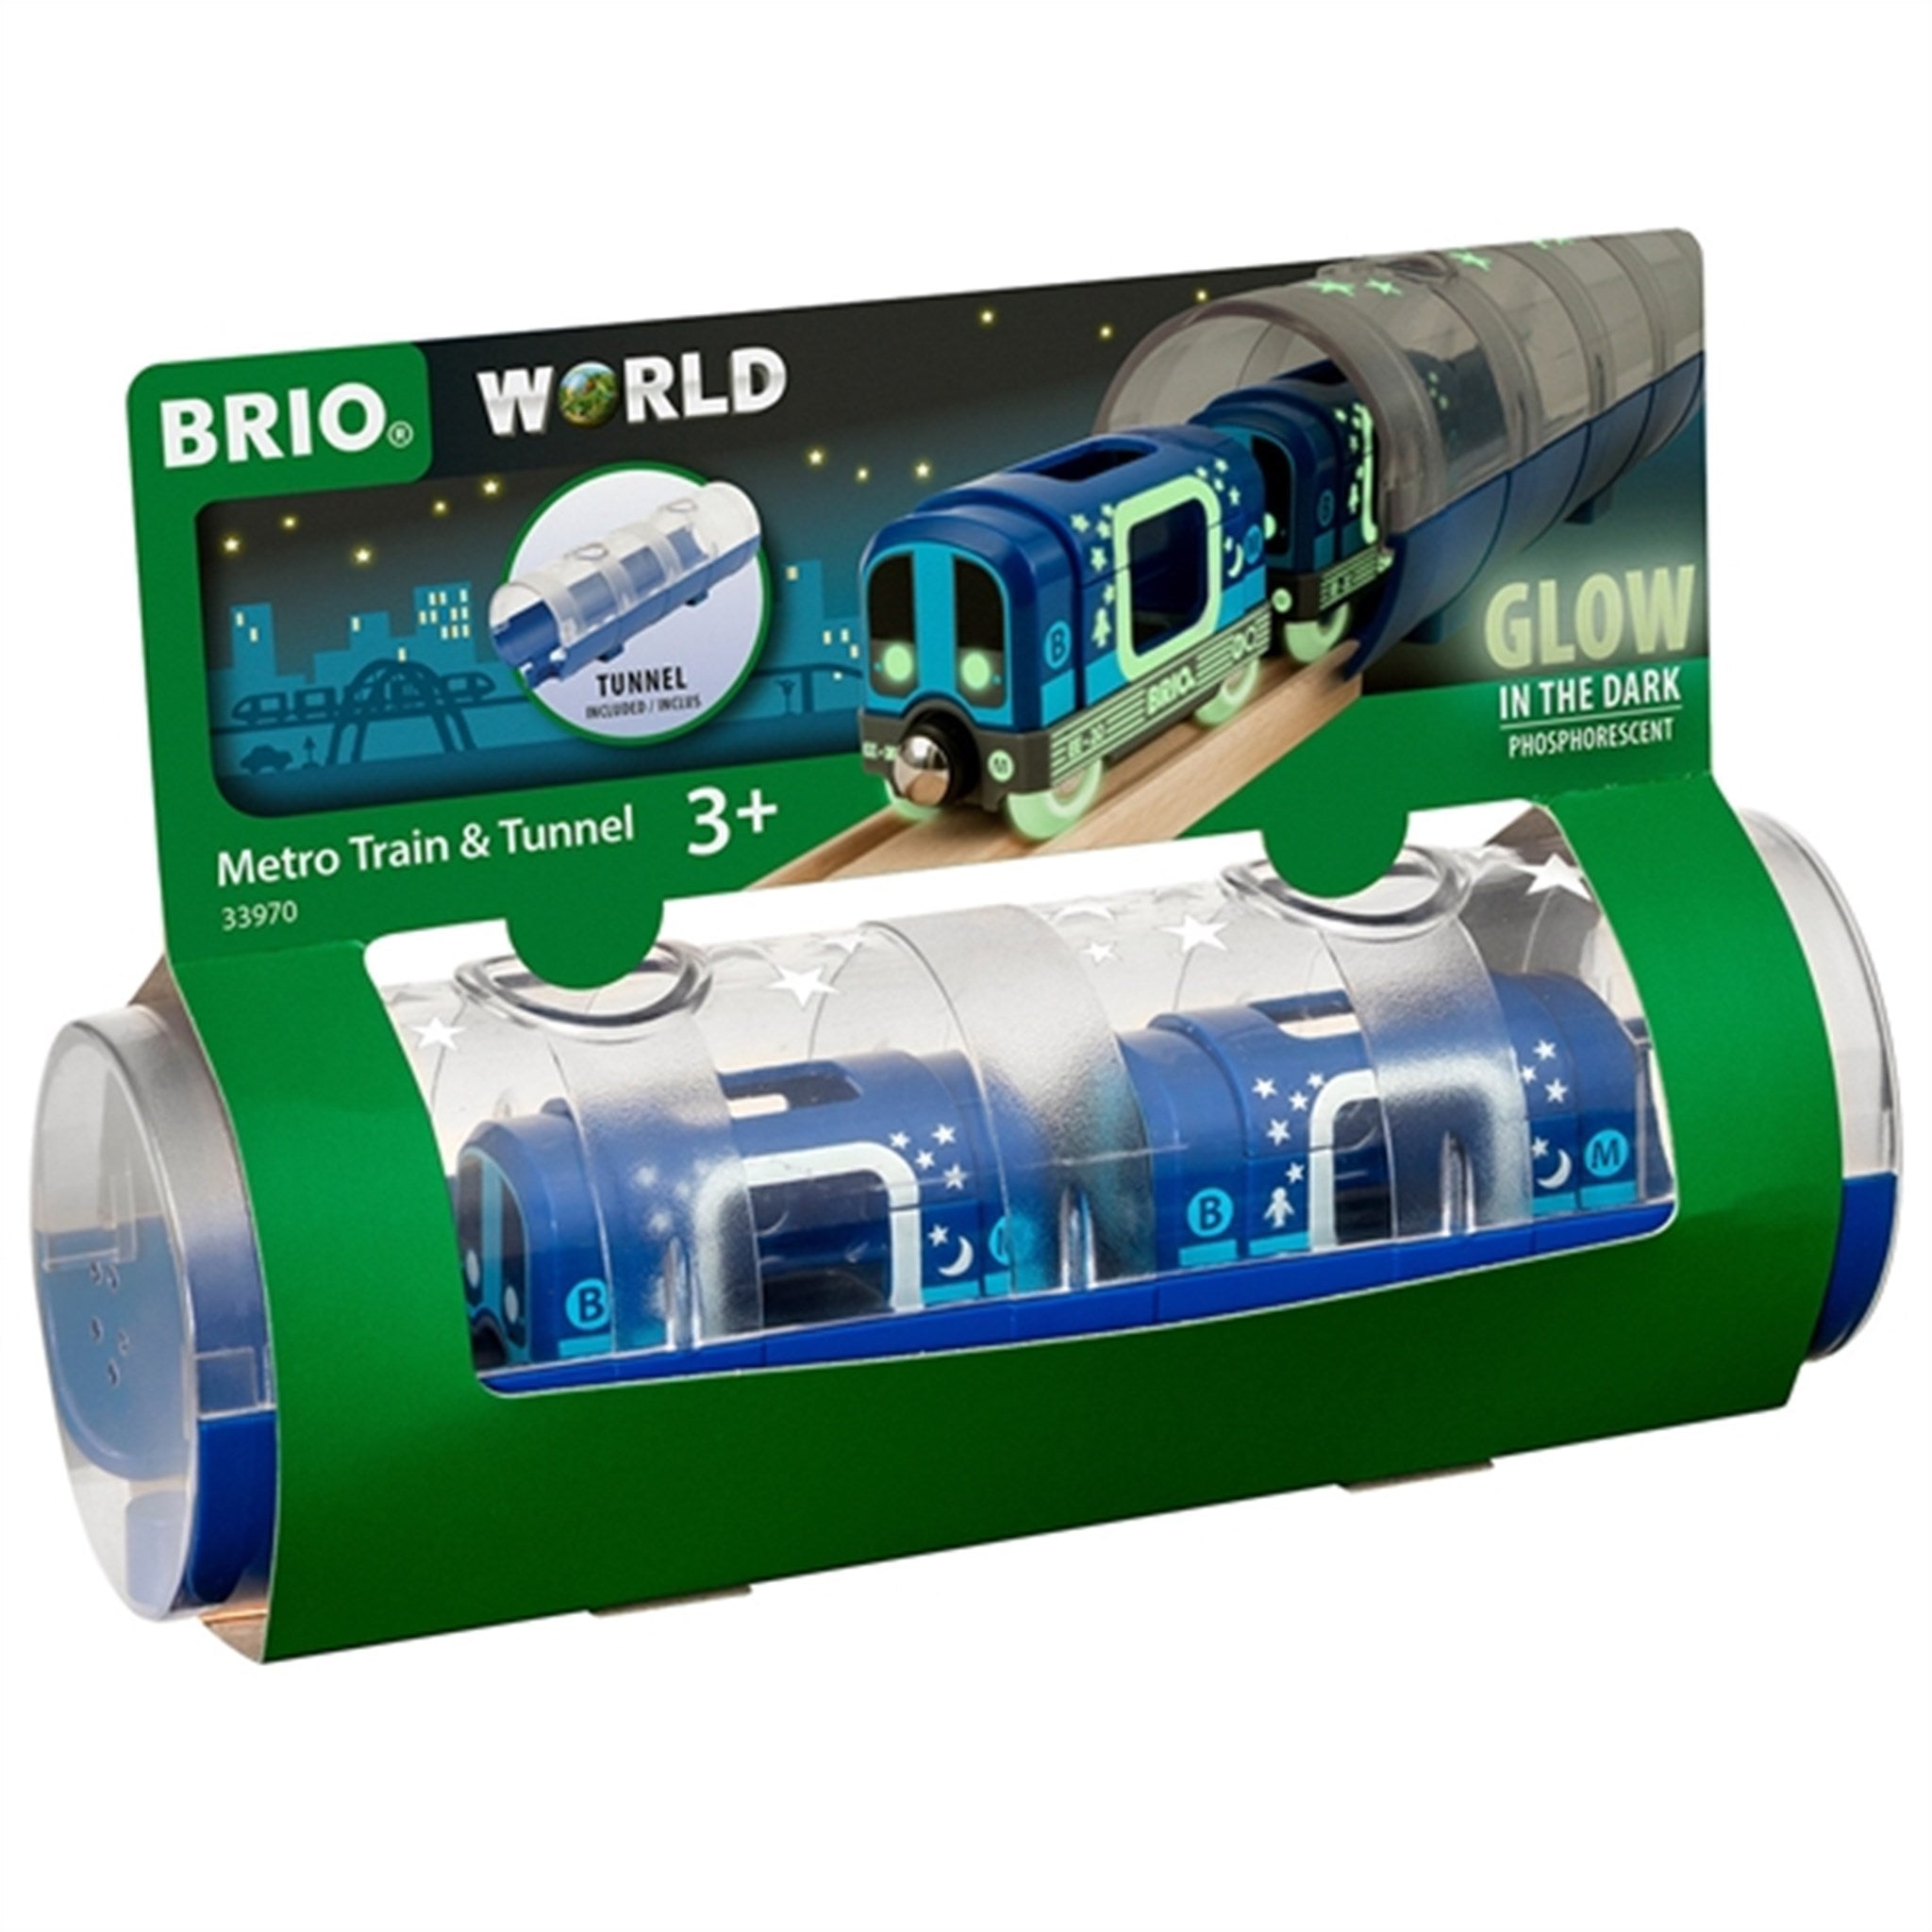 BRIO® Metro Train & Tunnel 2